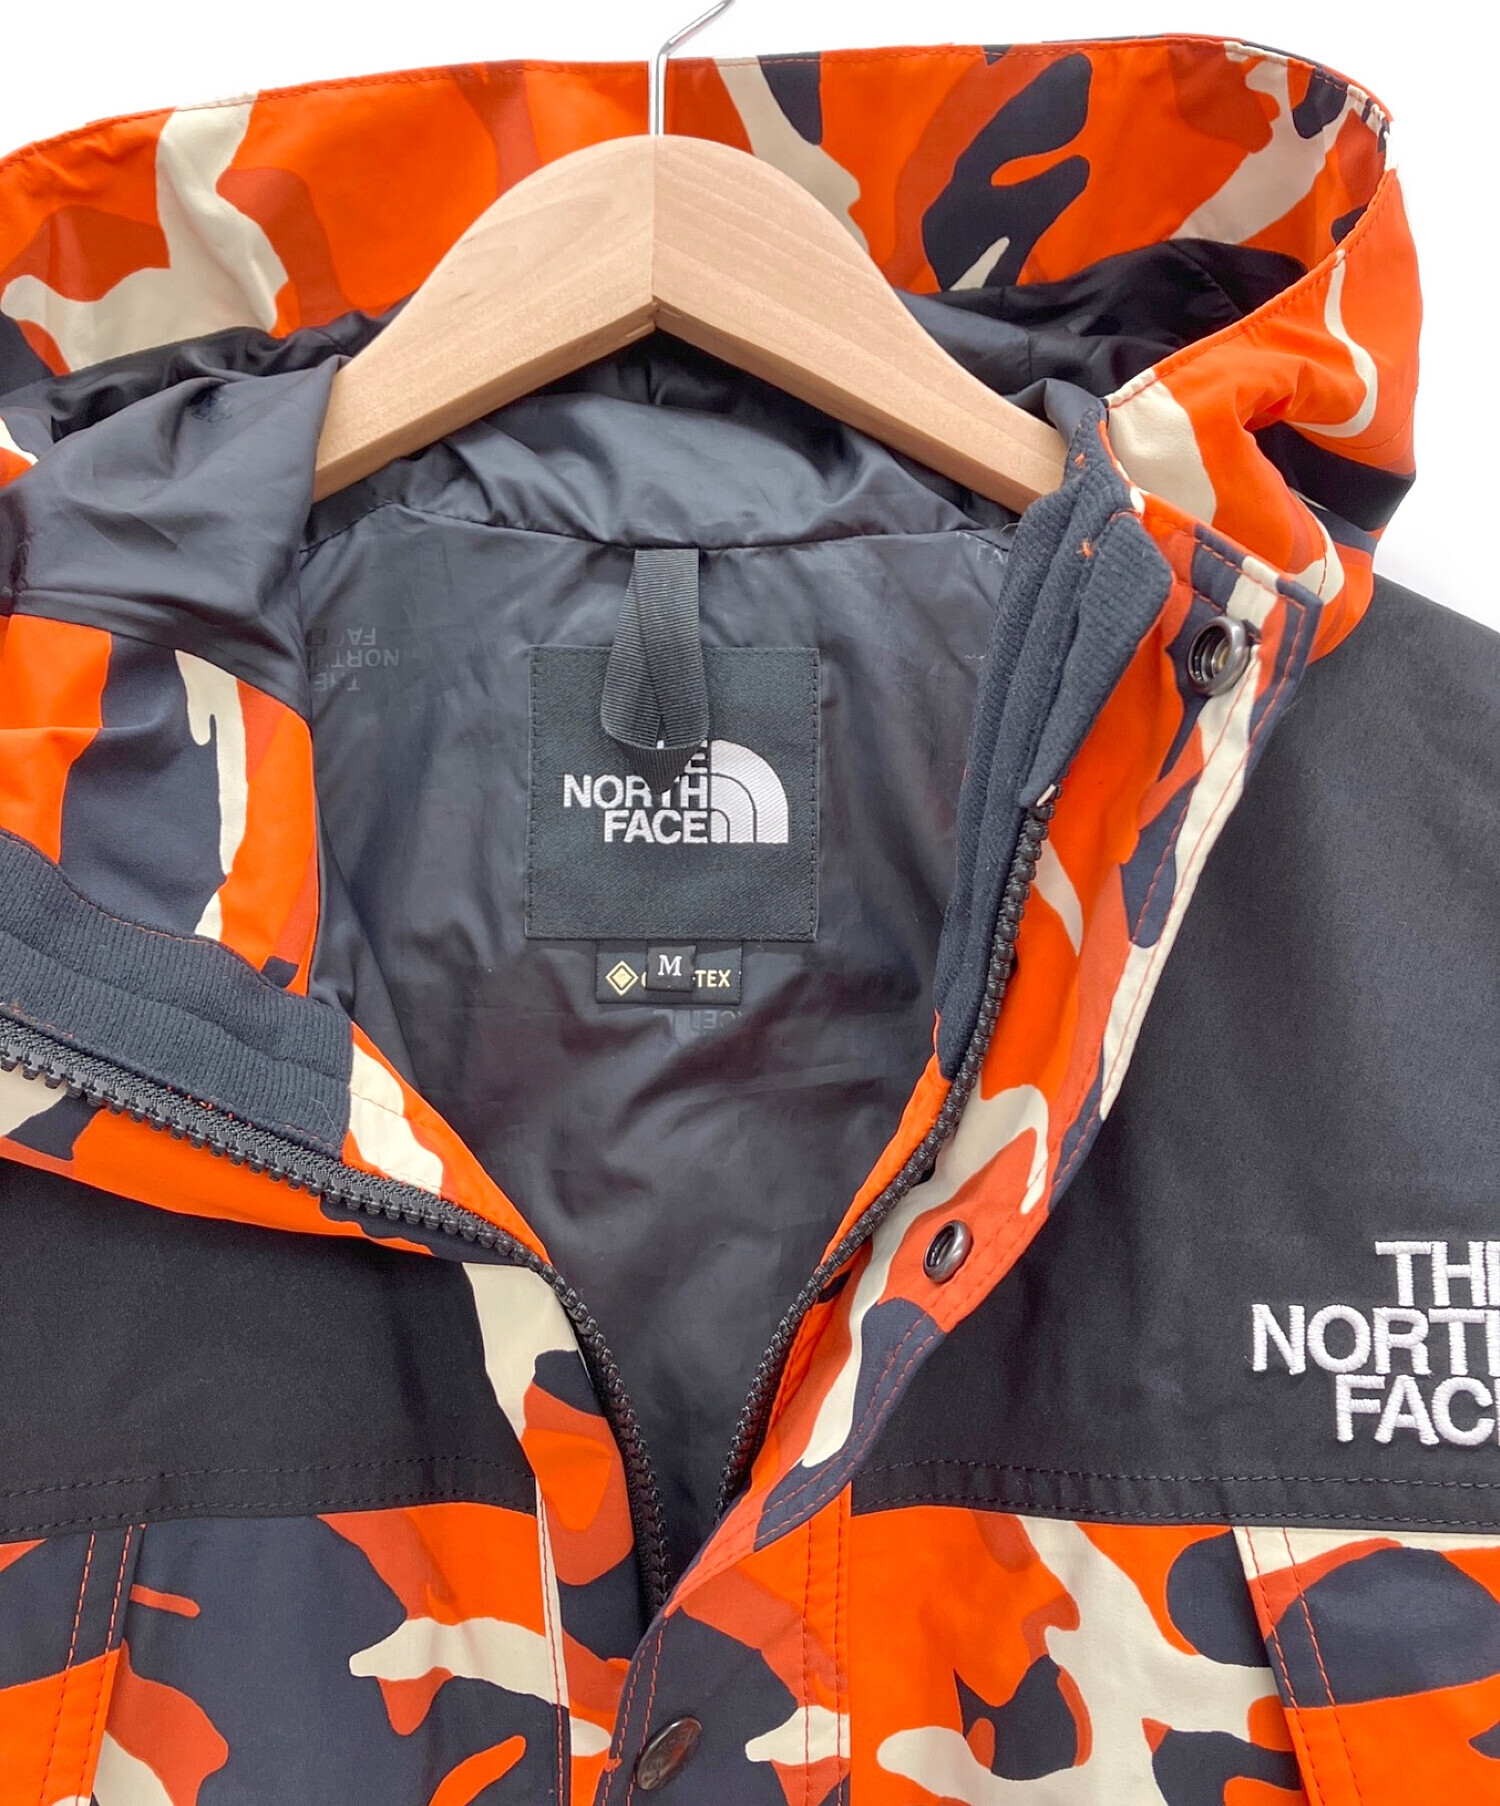 THE NORTH FACE (ザ ノース フェイス) ノベルティマウンテンライトジャケット レッドオレンジエクスプローラーカモ サイズ:M